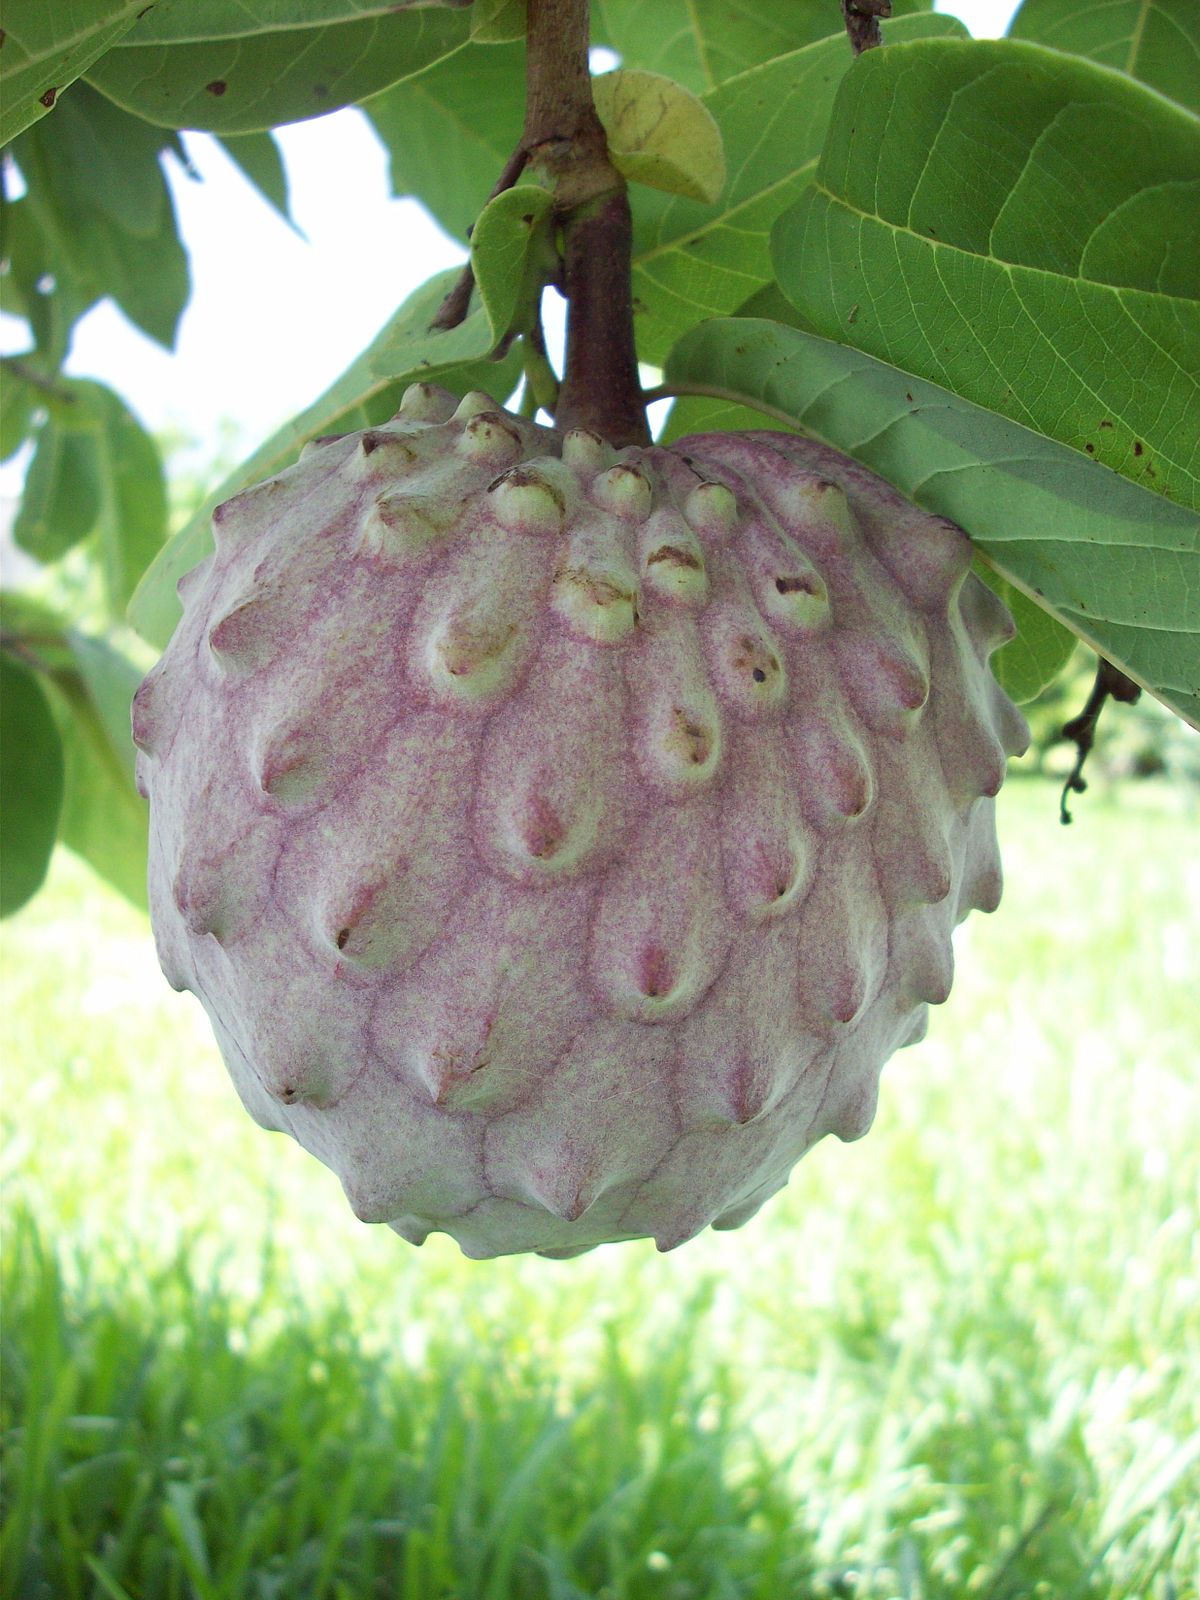 Fruit - Wikipedia